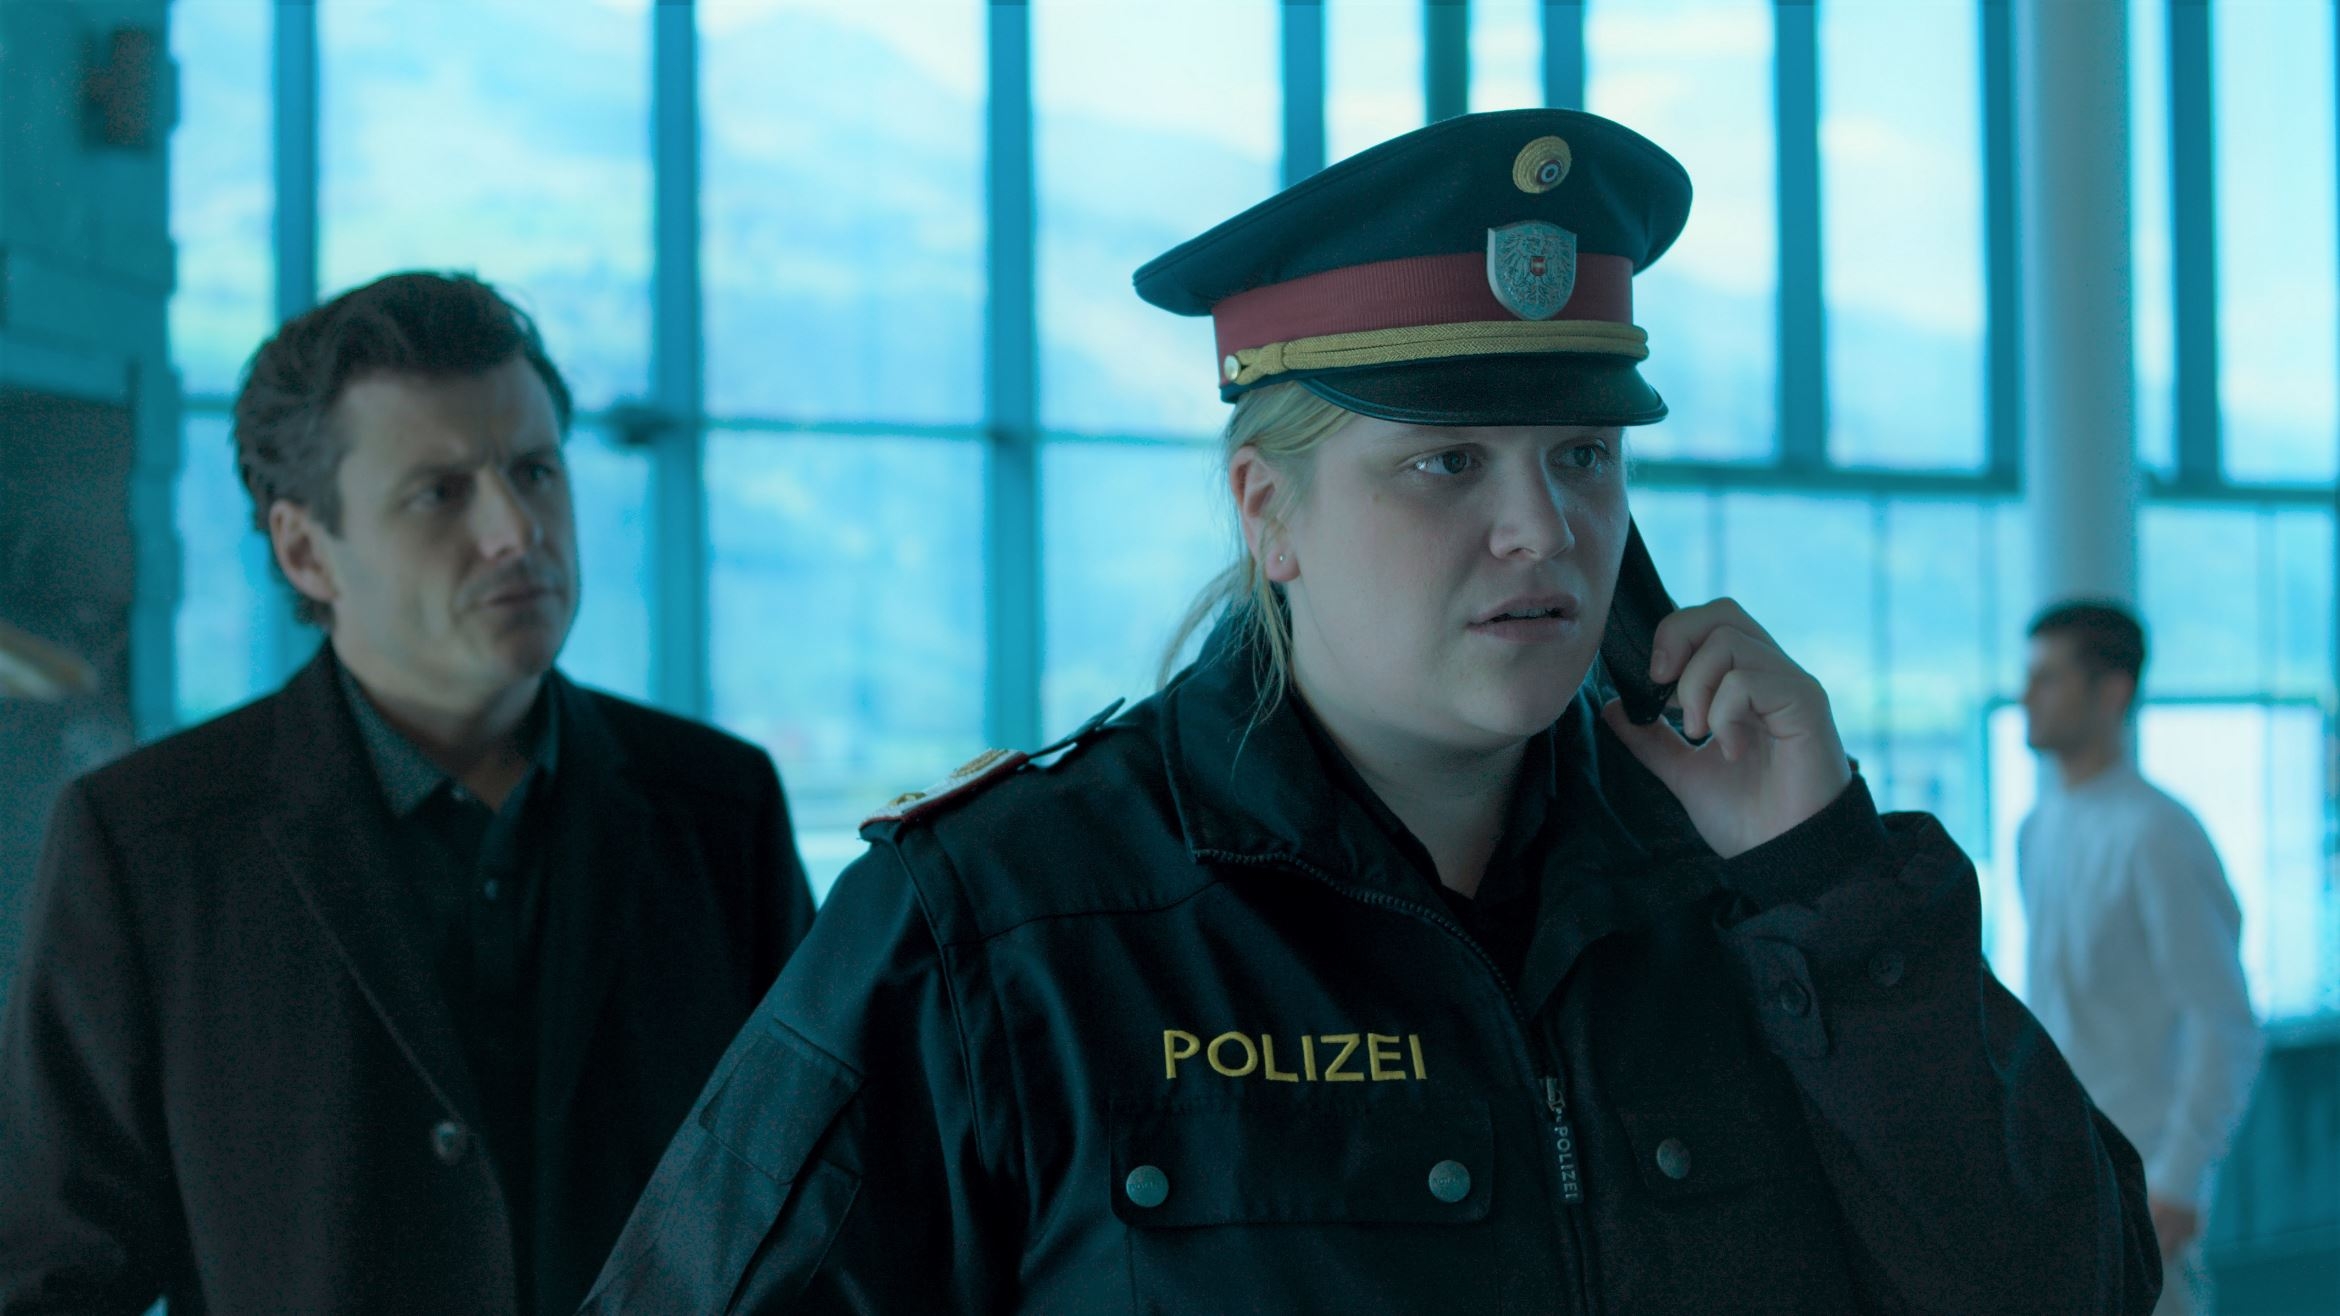 Postenkommandantin Franziska Heilmayr (Stefanie Reinsperger, r.) und der leitende Kommissar Martin Merana (Manuel Rubey) in "Das dunkle Paradies" - 